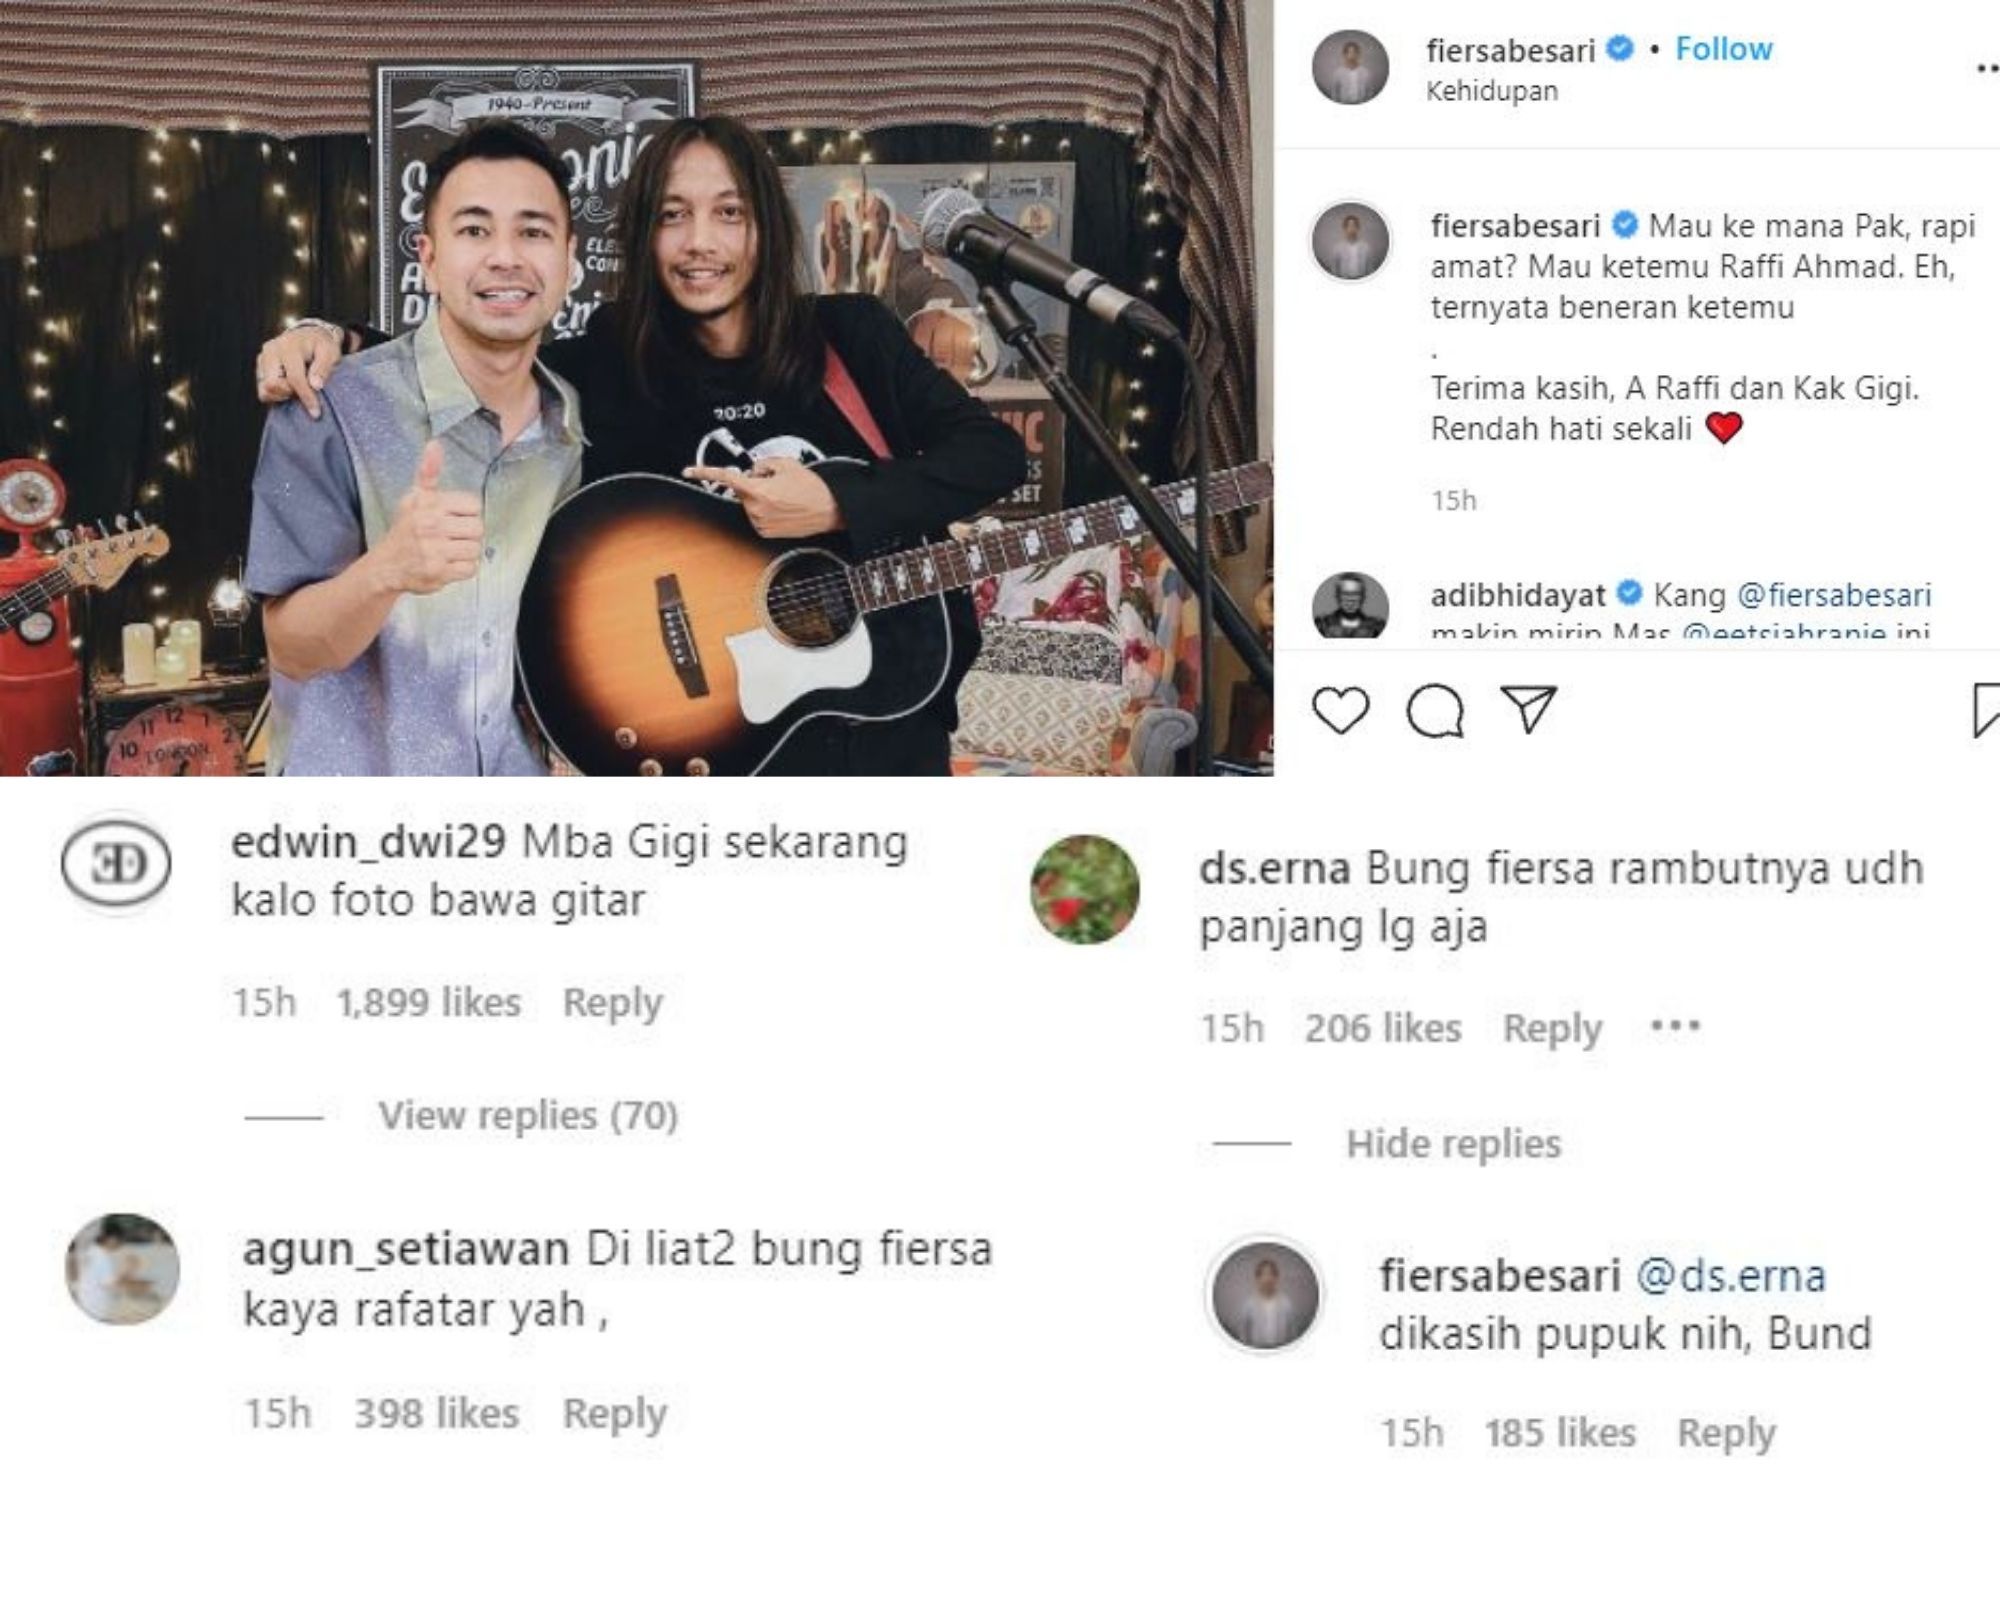 Netizen ramai-ramai menuliskan komentar nyeleneh usai menyoroti rambut gondrong Fiersa Besari saat berfoto dengan Raffi Ahmad.*